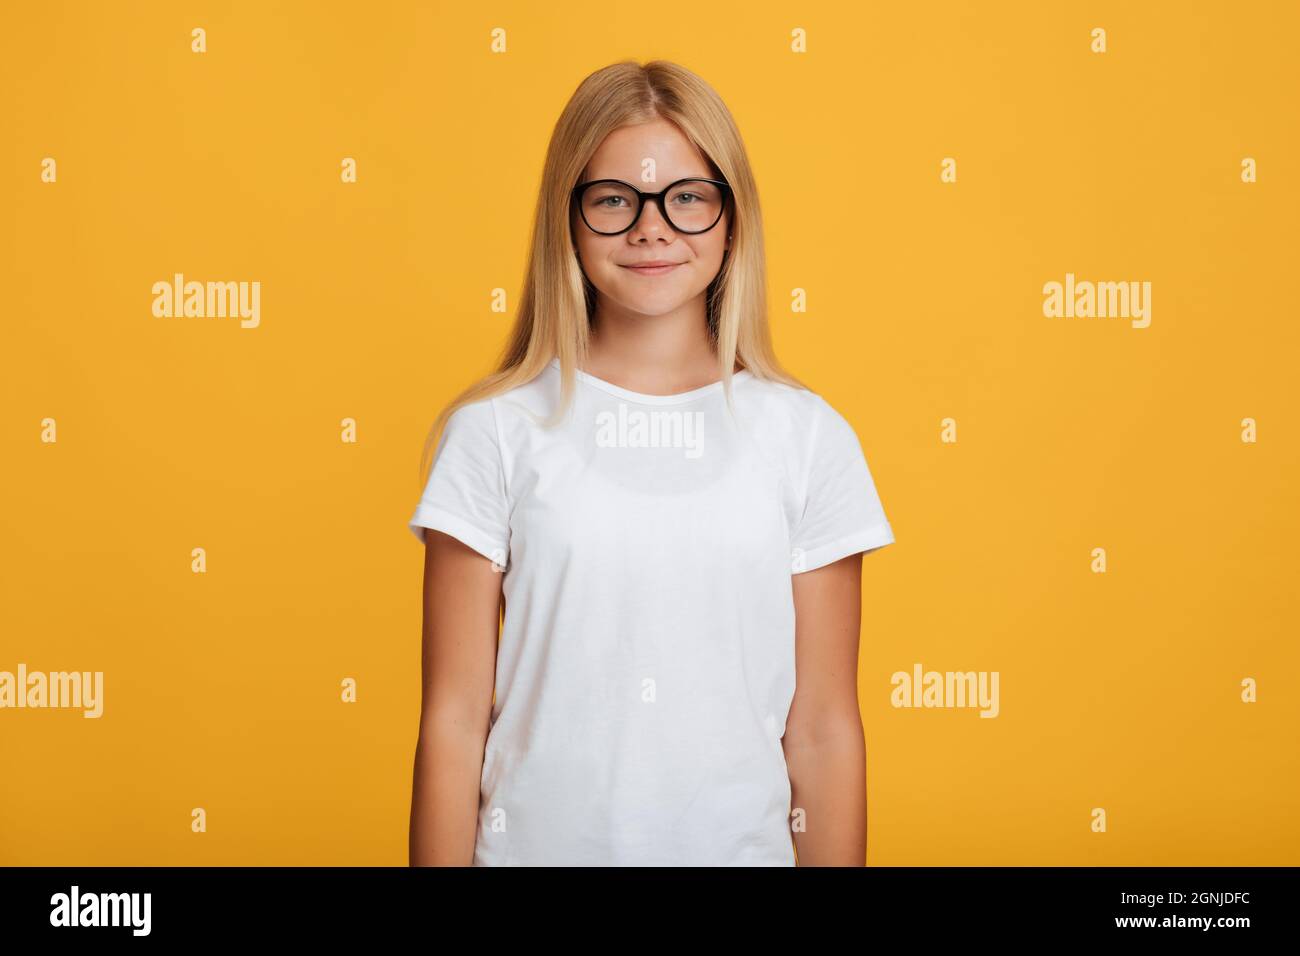 Calma sicura ragazza adolescente europea graziosa in t-shirt bianca e occhiali guardando la macchina fotografica Foto Stock